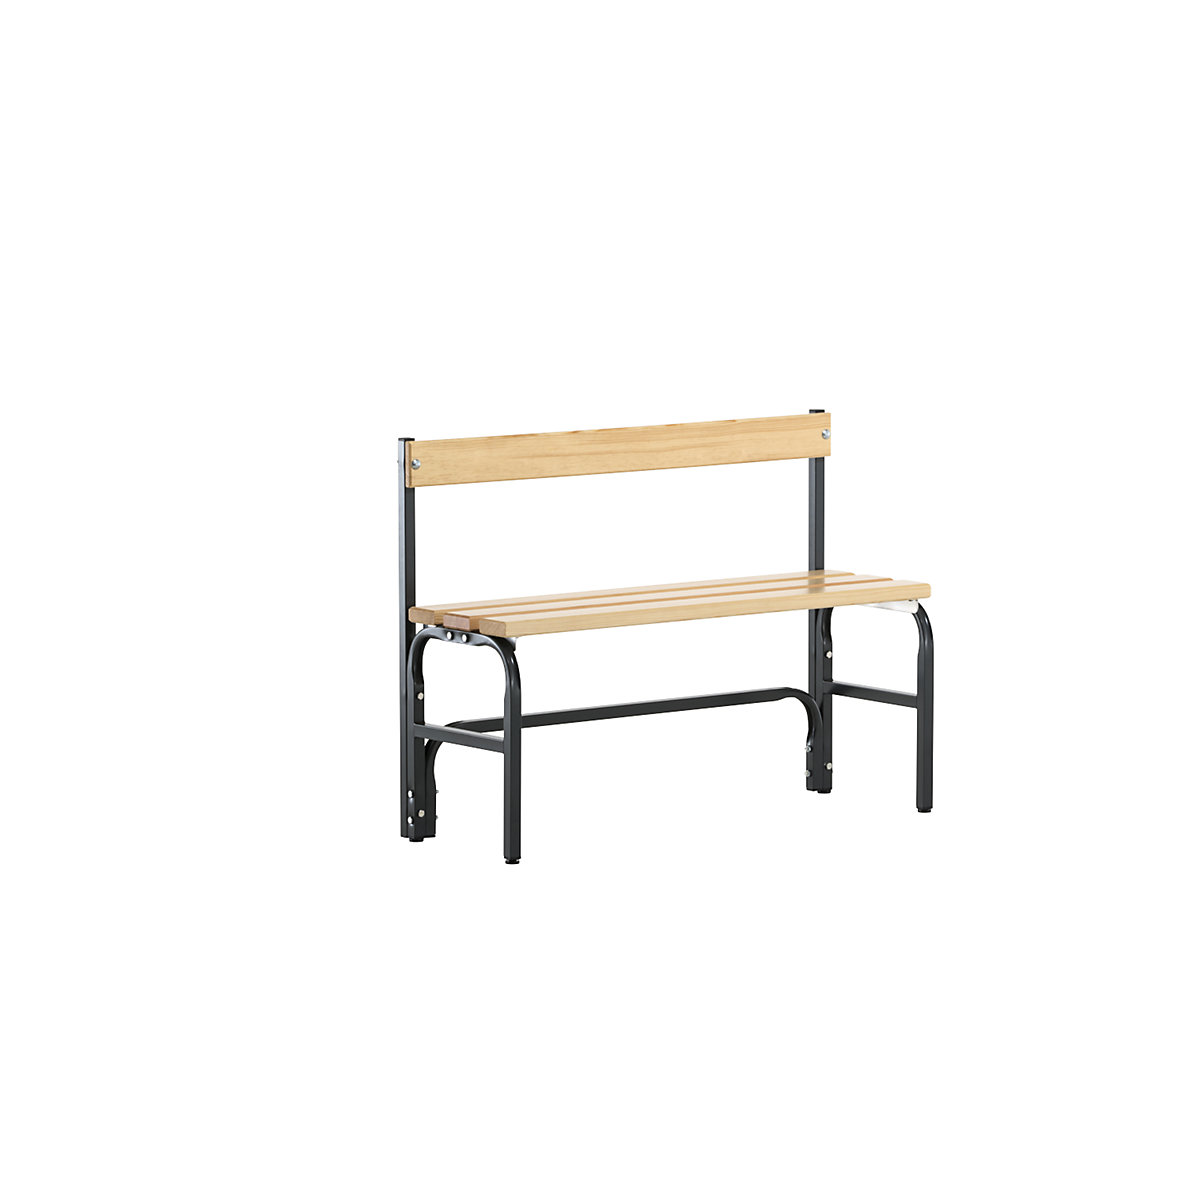 Jednostranná šatnová lavice s poloviční výškou a opěradlem - Sypro